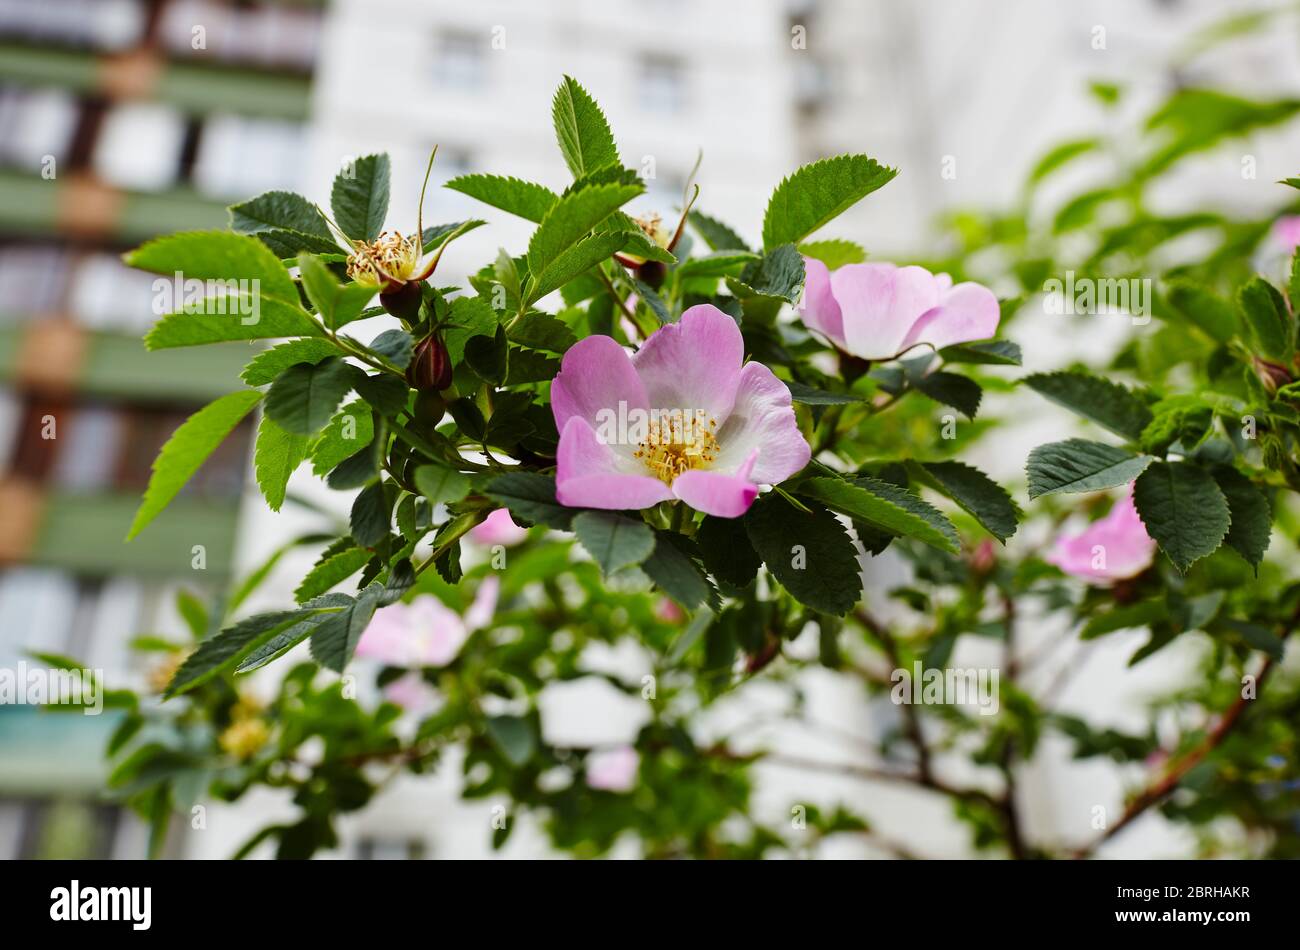 Hermosa ramita de briar de primavera (rosa de perro o rosa de rosa), puede ser utilizado como fondo. Flor rosa, brotes, hojas verdes Foto de stock